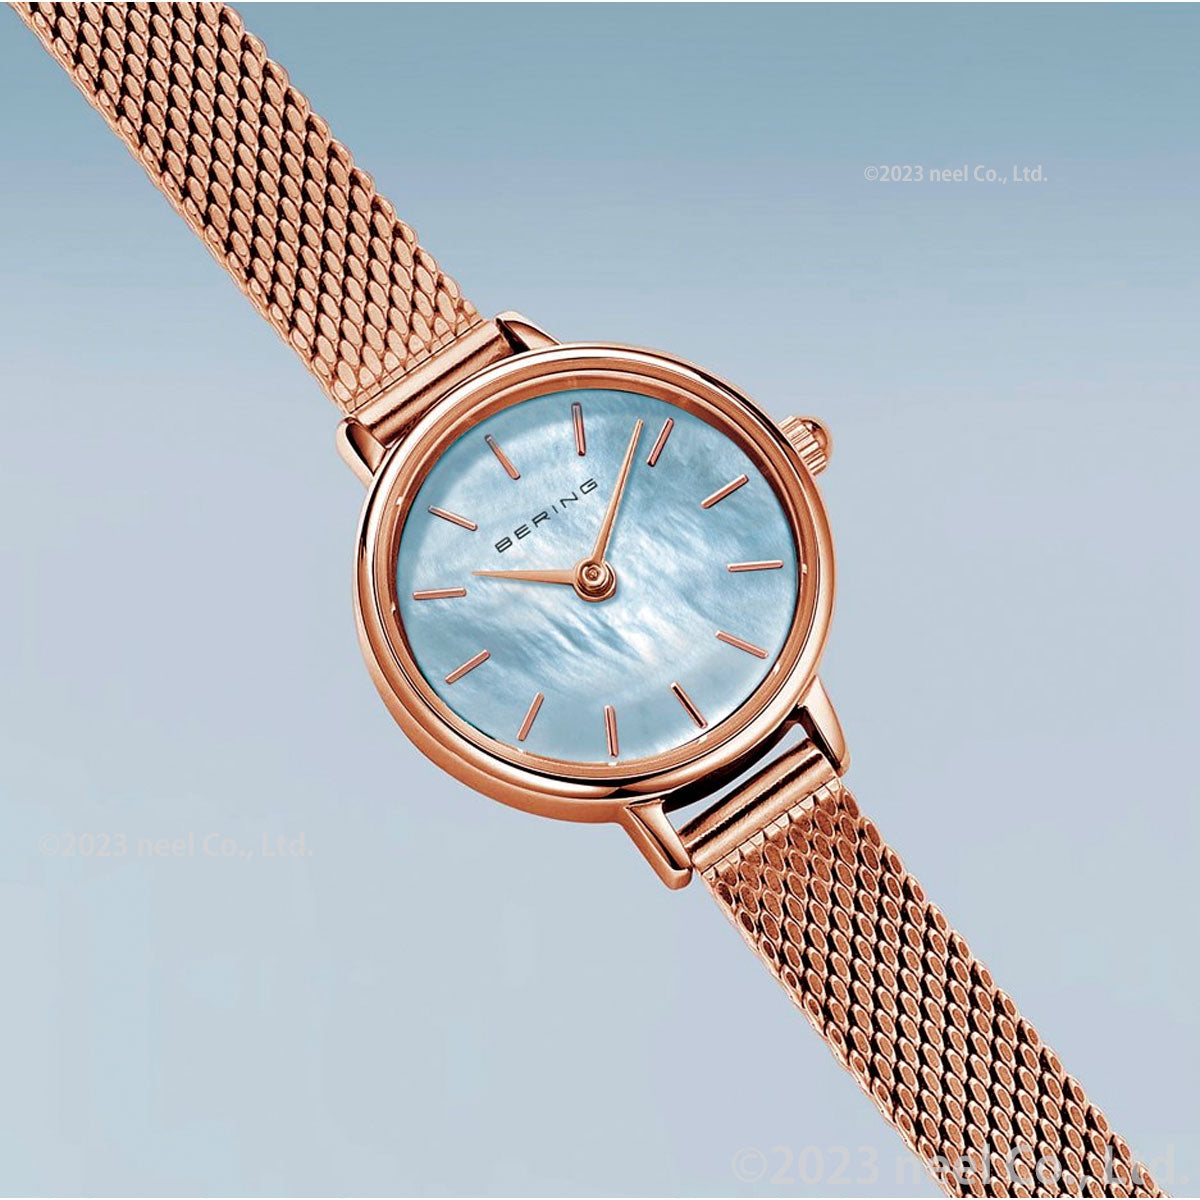 ベーリング BERING 日本限定モデル 腕時計 レディース 11022-360 クラシック ミニコレクション Cassic-Mini Collection